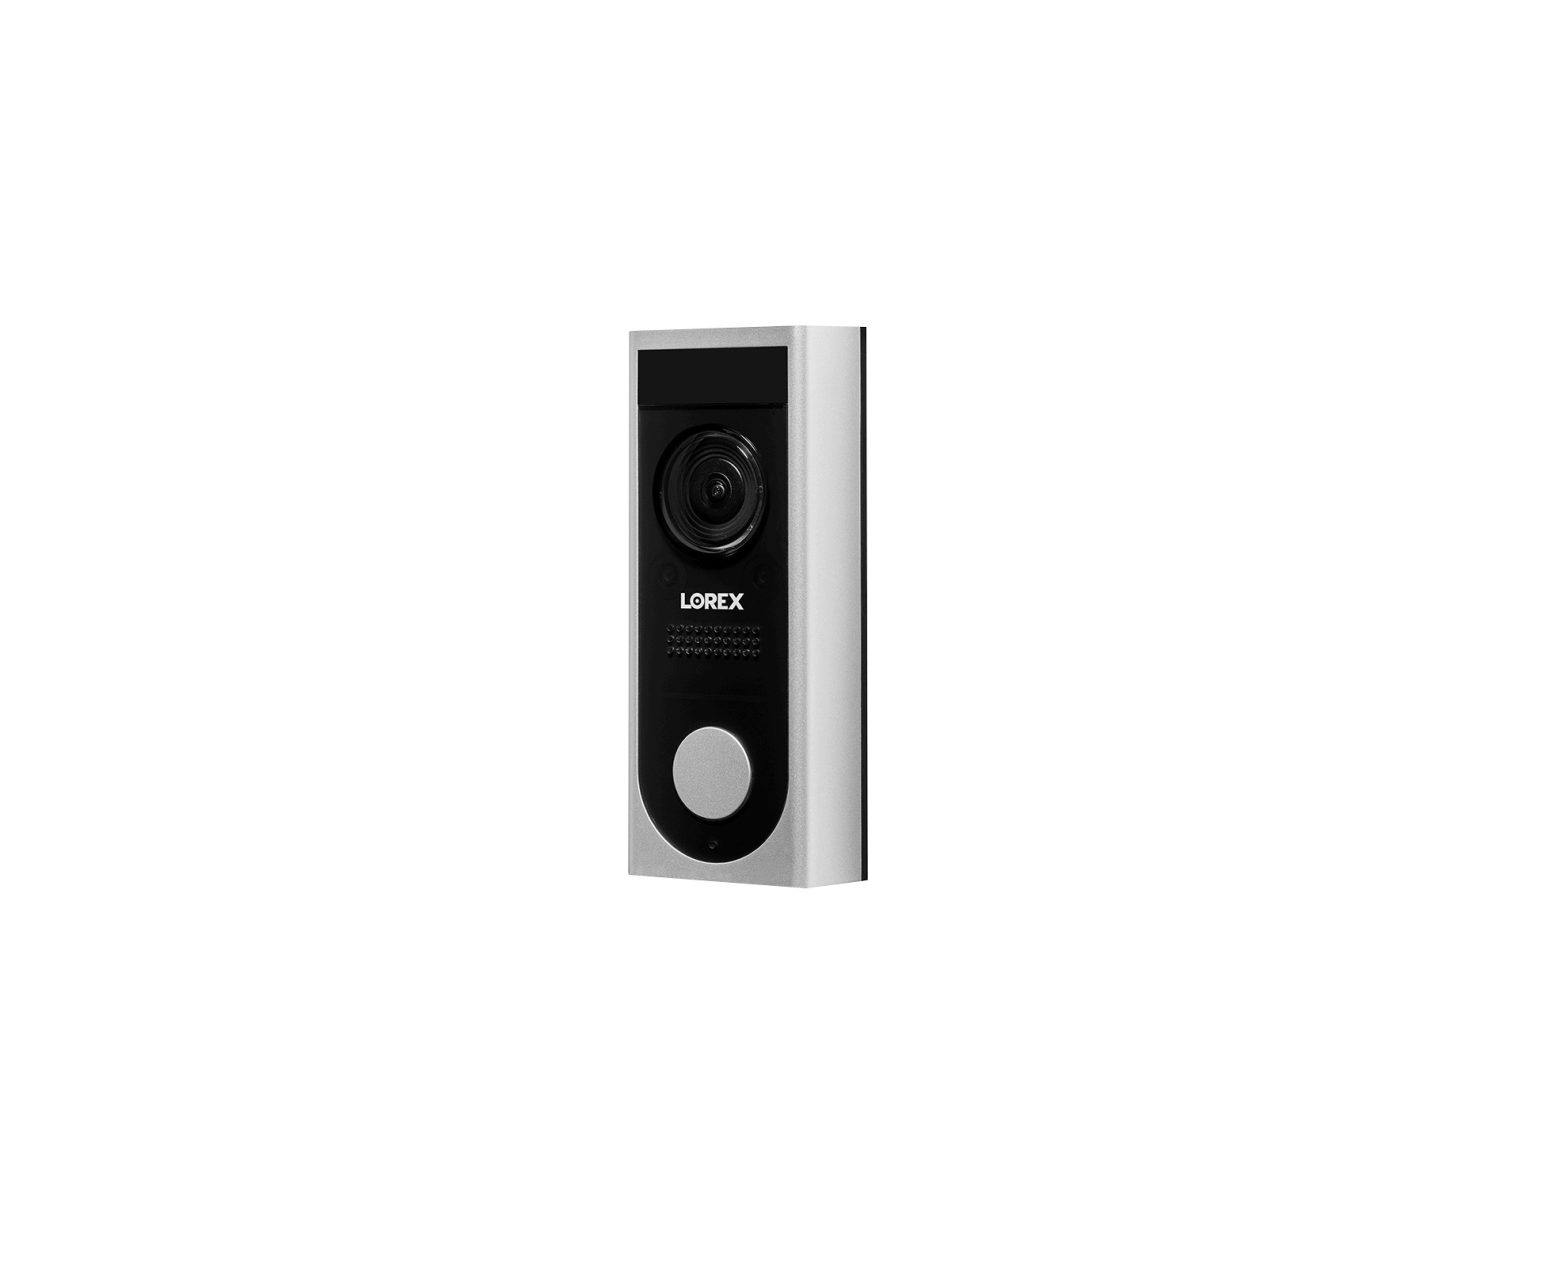 LOREX HD Video Doorbell User Guide